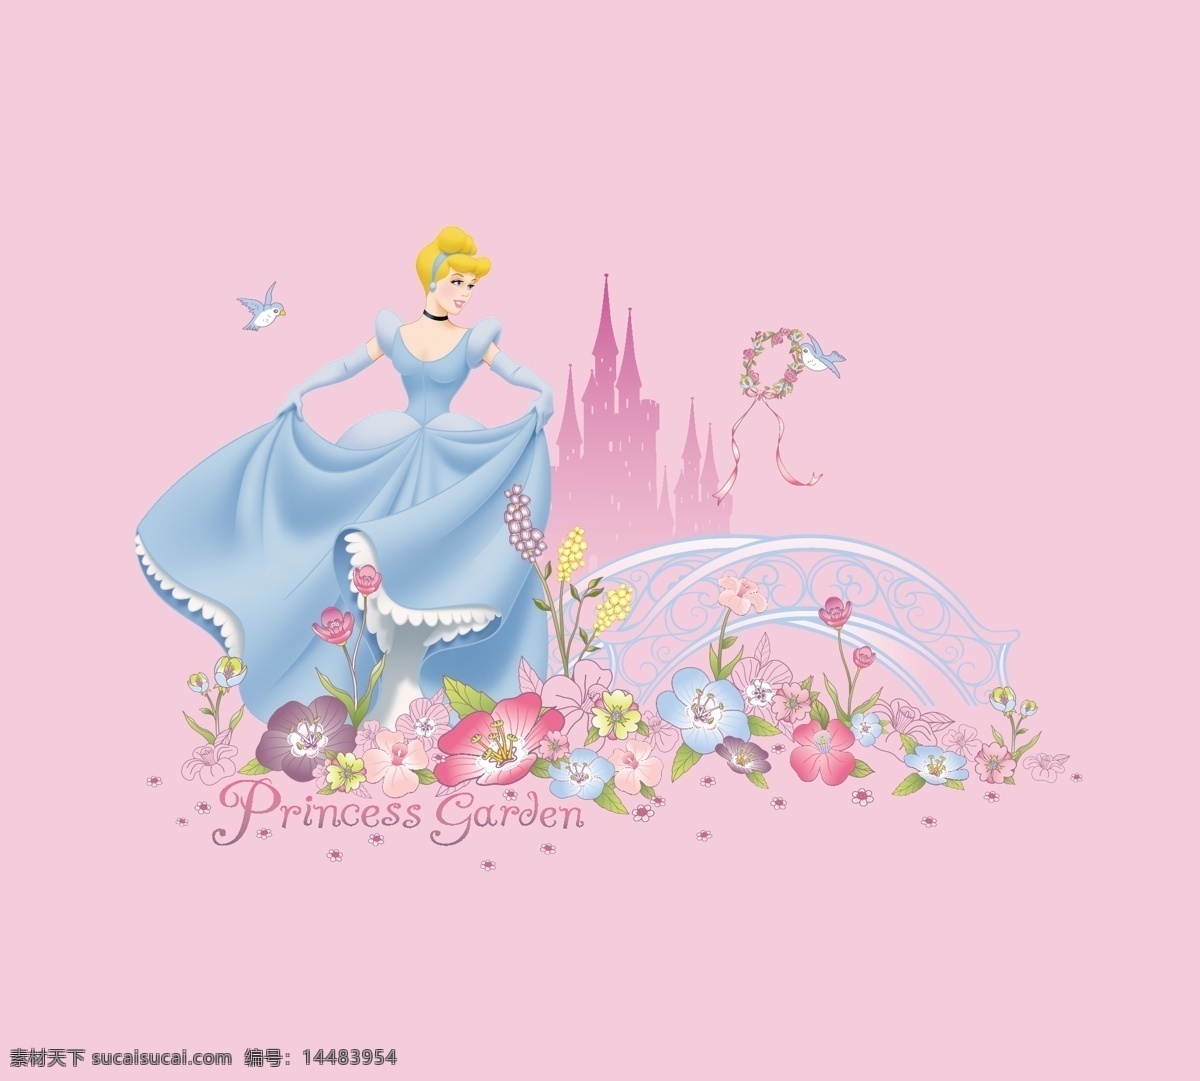 公主印花 服装 女装 童装 印花 迪士尼 卡通 动画 童话 公主 美女 少女 女孩 灰姑娘 花朵 城堡 t恤印花 卡通设计 矢量